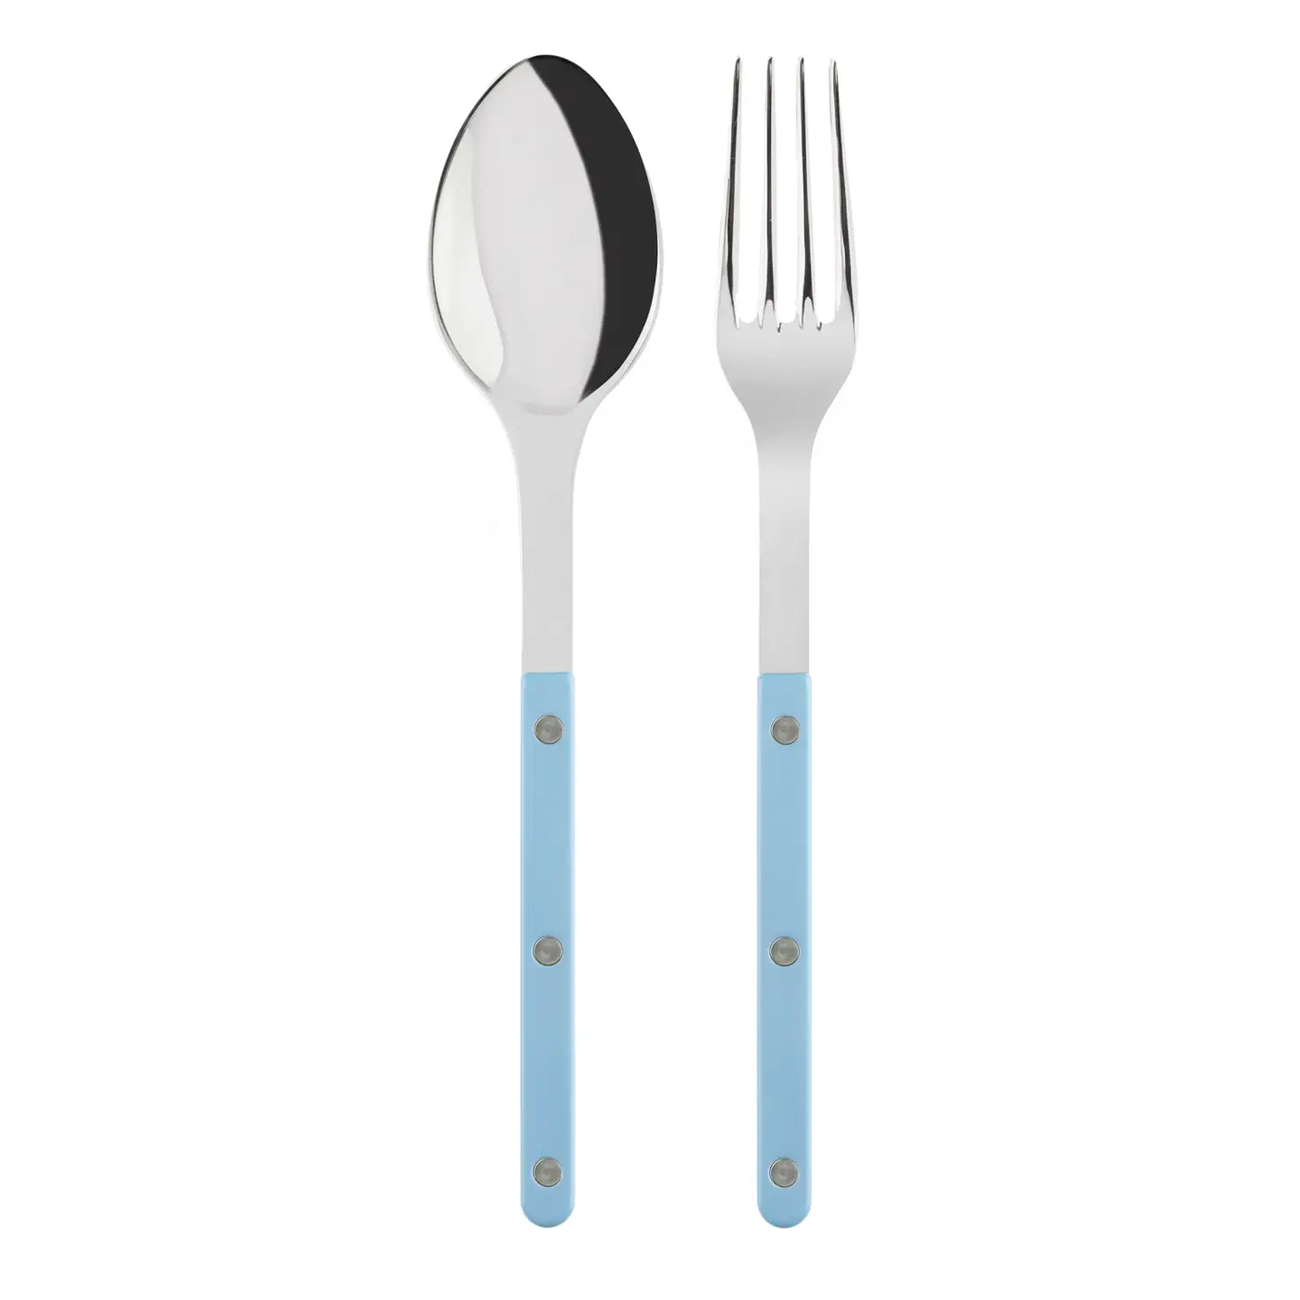    sabre-cutlery-serving-set-salad-servers-pastel-blue